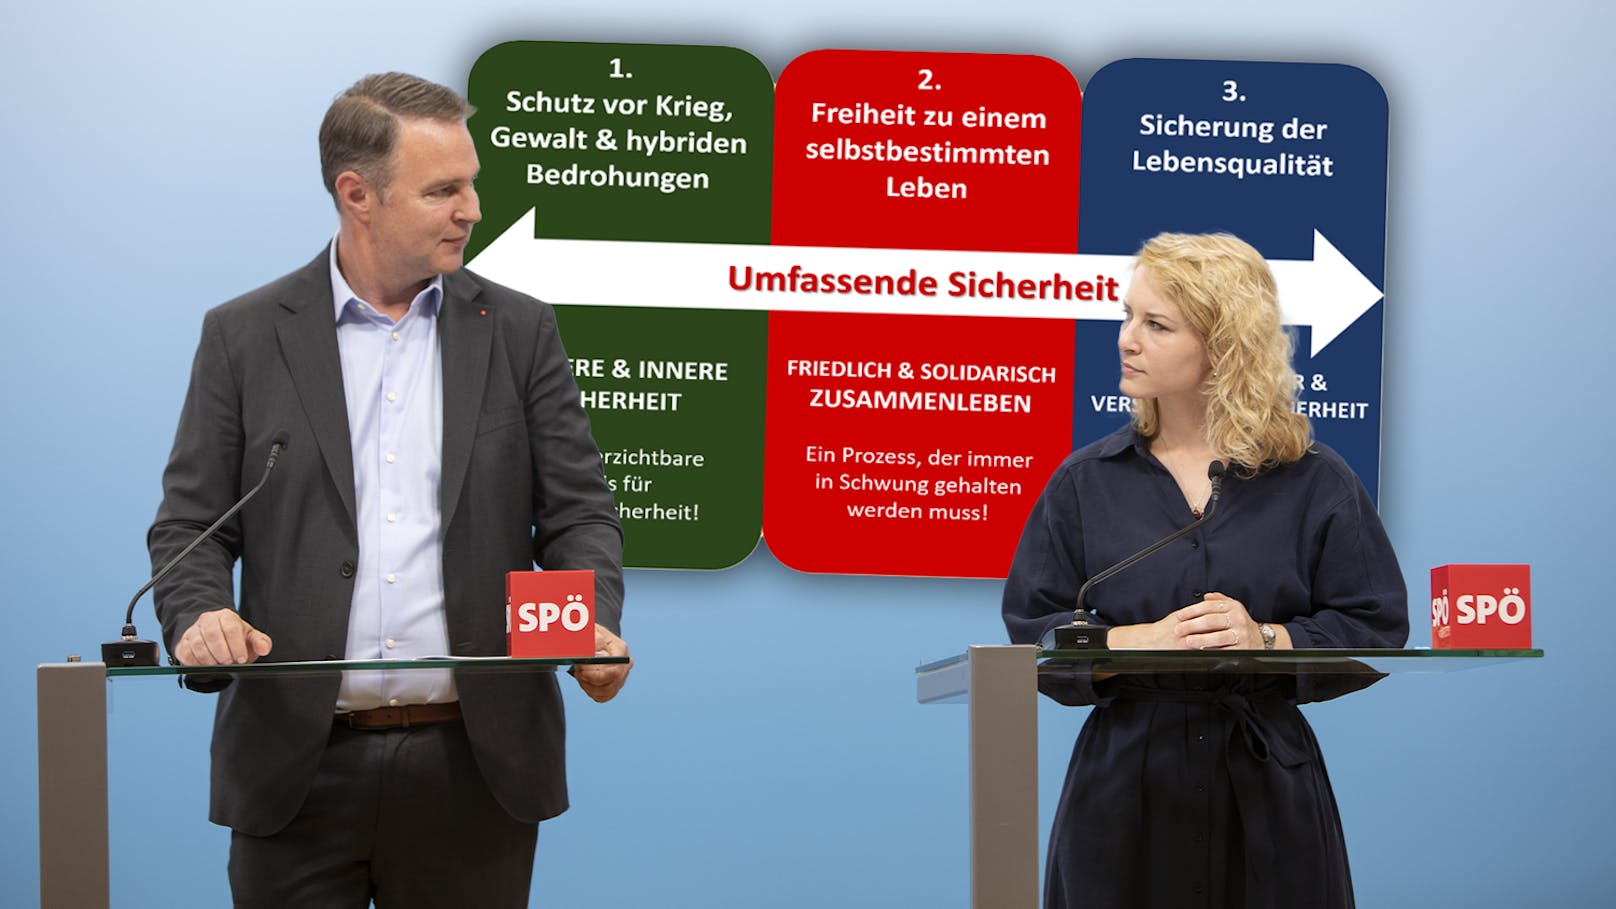 Für die Sicherheit – SPÖ will mehr Macht für Kanzler